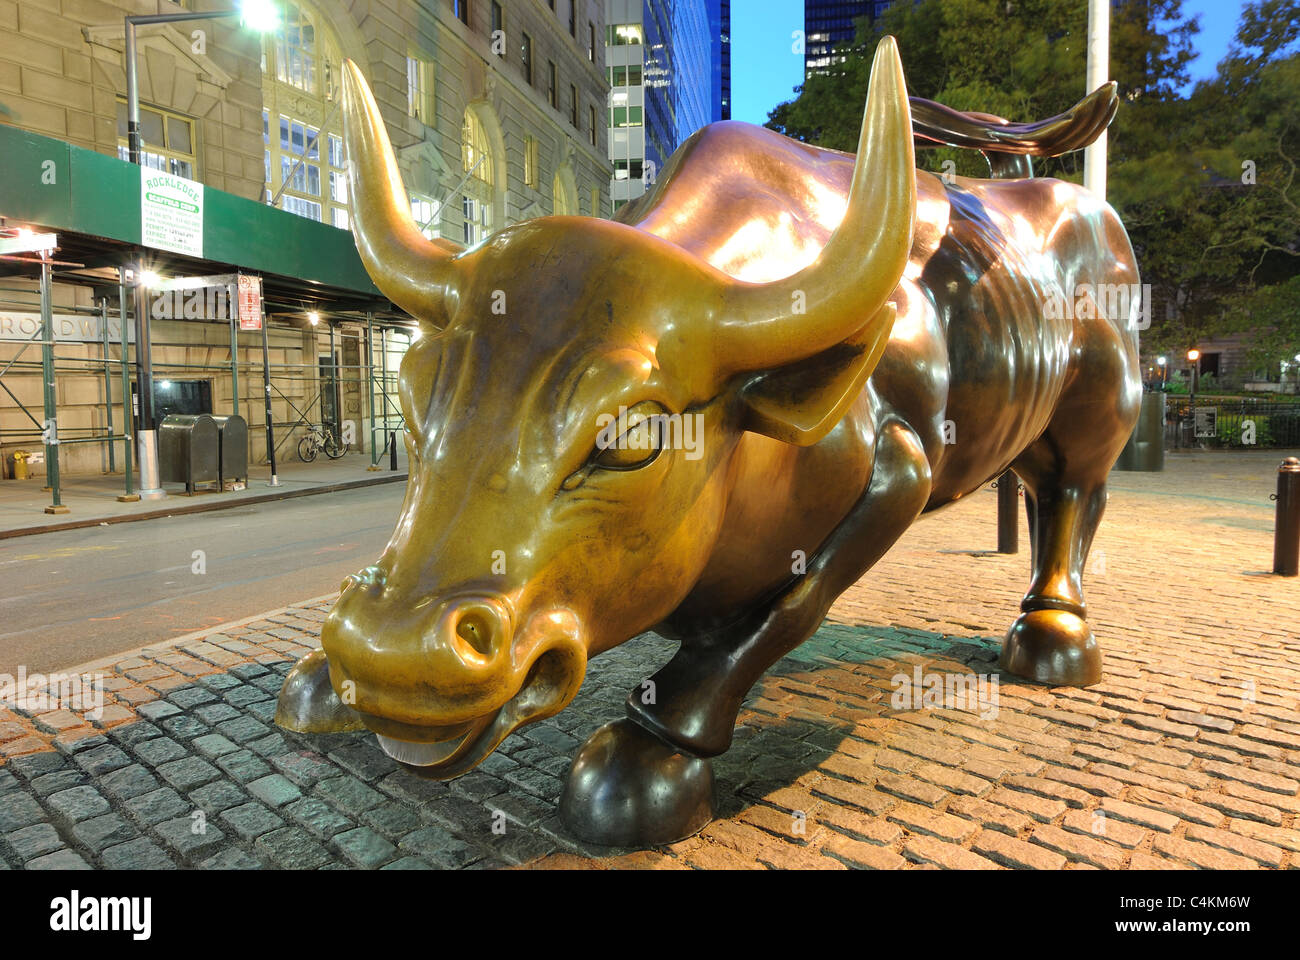 Laden Sie Bulle, ein Symbol der amerikanischen Ausdauer in New York City. 13. Oktober 2010. Stockfoto